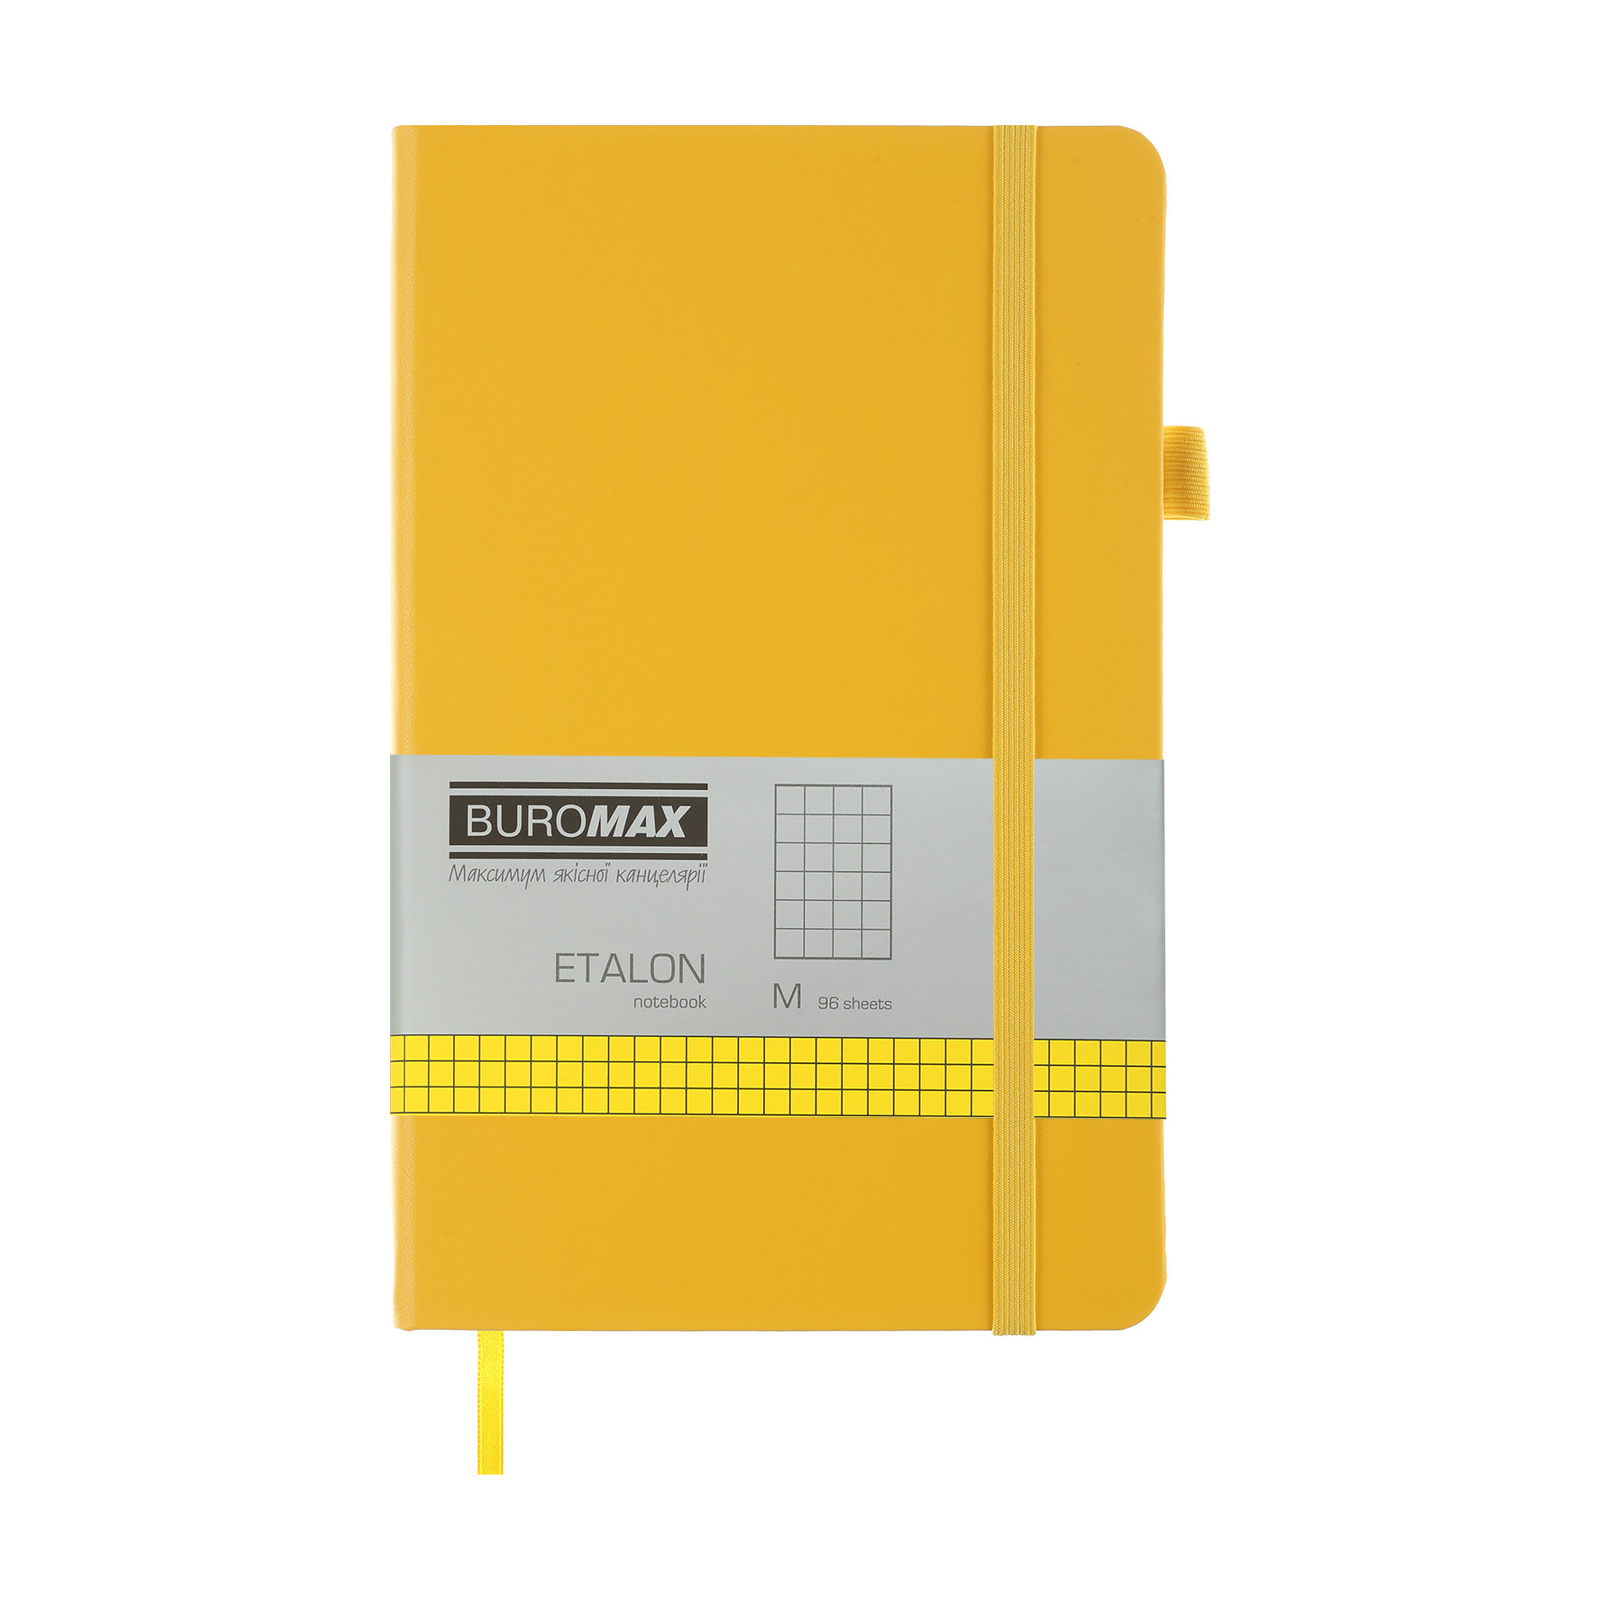 Книга записная Buromax Etalon 125x195 мм 96 листов в клетку обложка из искусственной кожи Желтая (BM.291160-08)